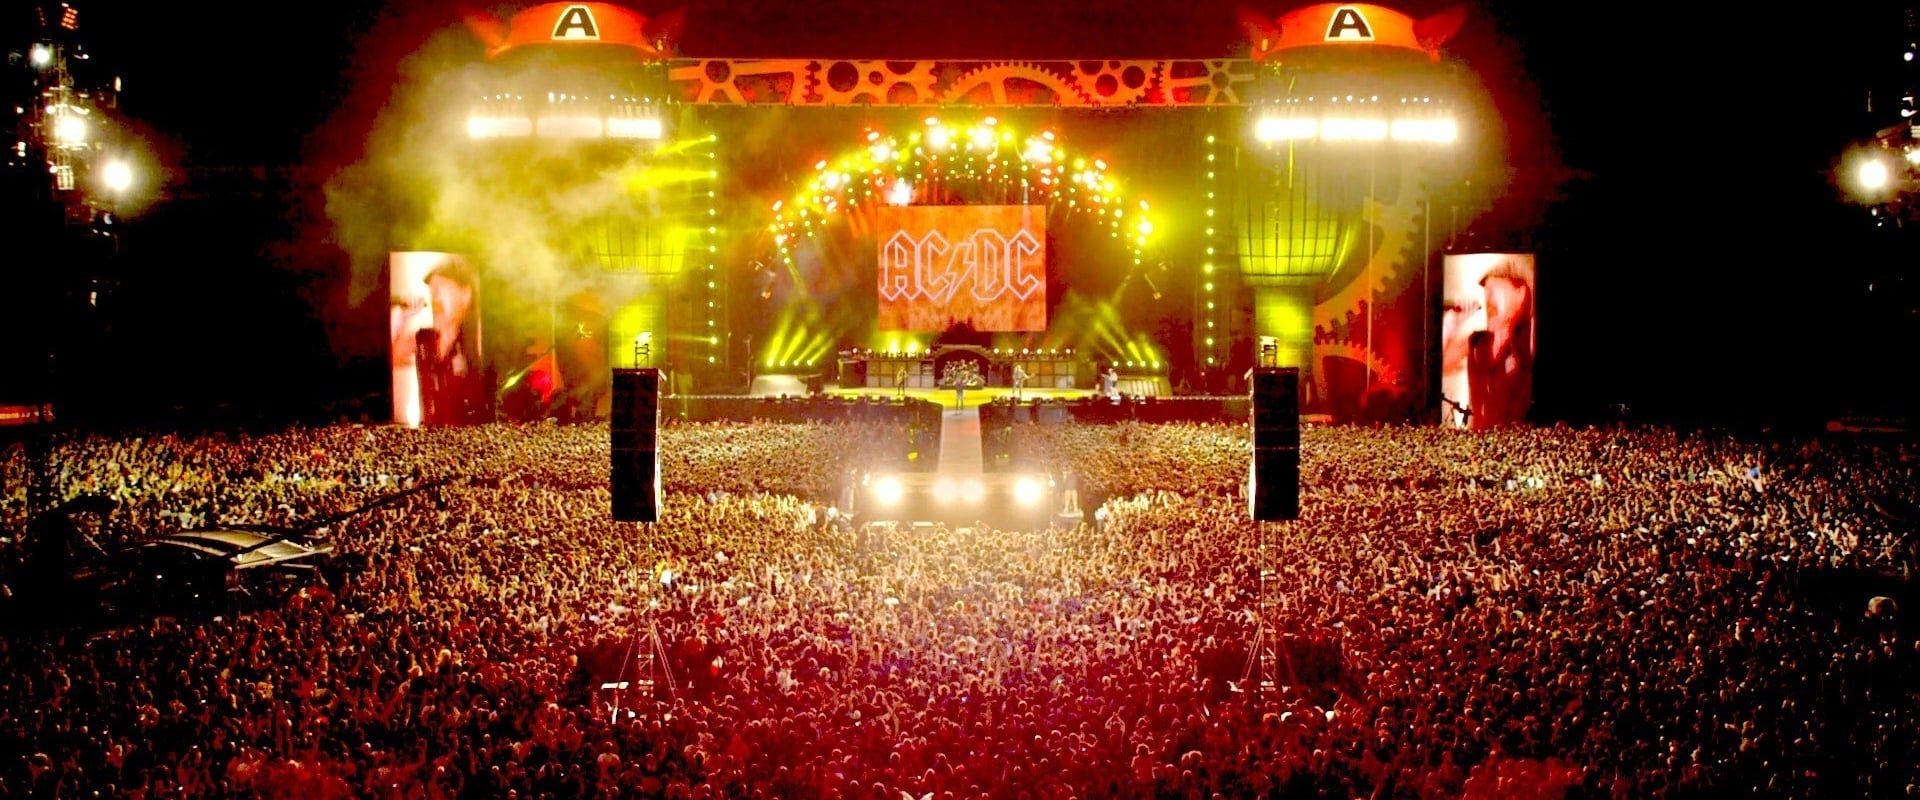 AC/DC Ao vivo no Estádio do River Plate Buenos Aires